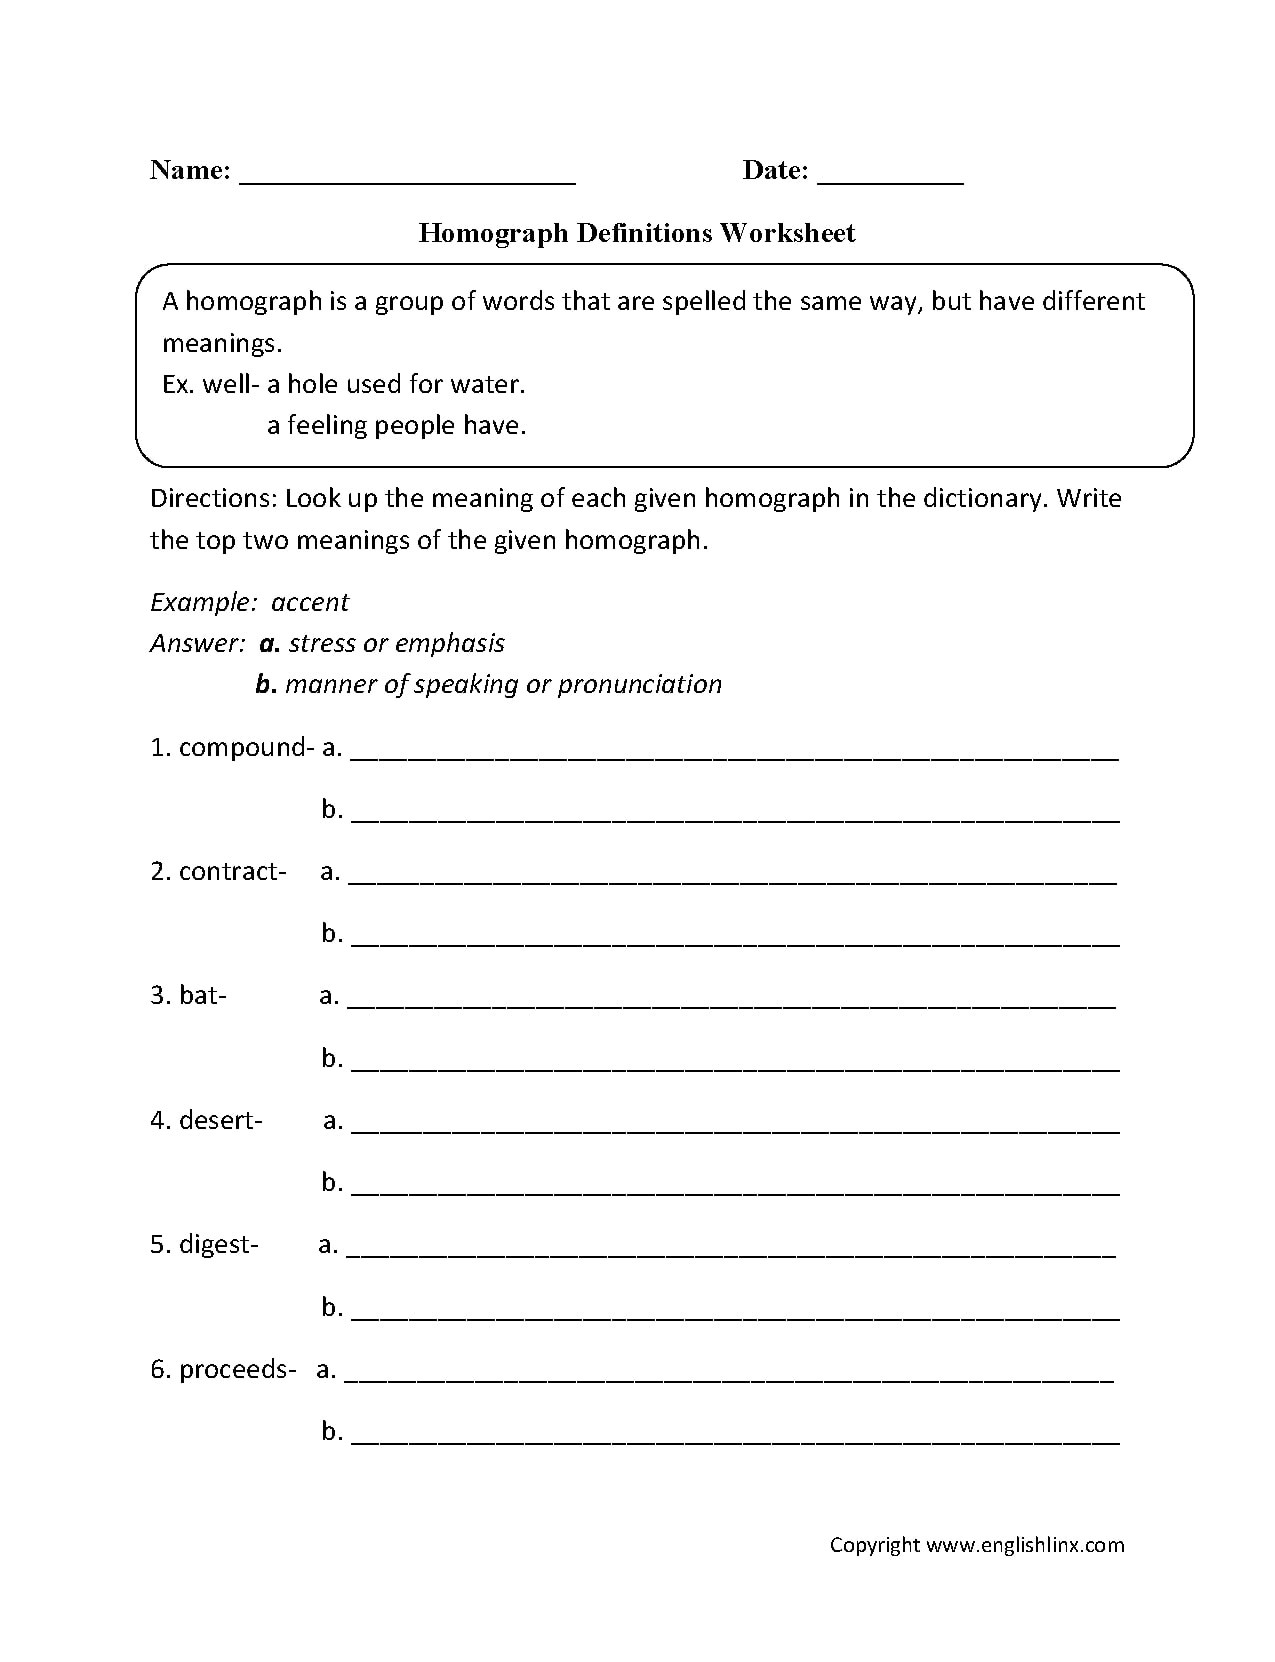 Homograph Worksheet 5th Grade Worksheet Homographs